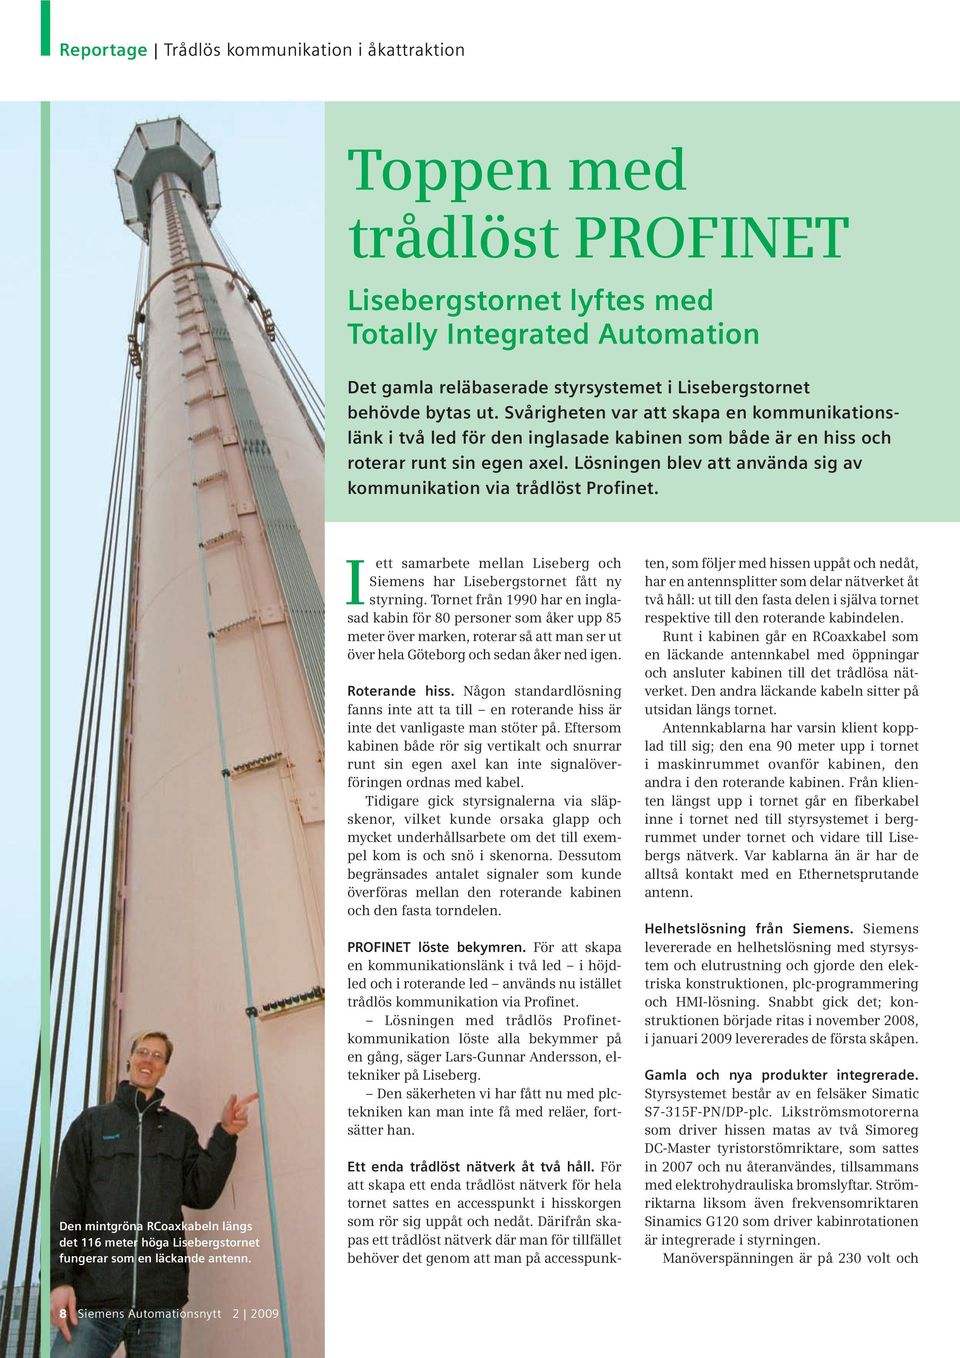 Lösningen blev att använda sig av kommunikation via trådlöst Profinet. Den mintgröna RCoaxkabeln längs det 116 meter höga Lisebergstornet fungerar som en läckande antenn.